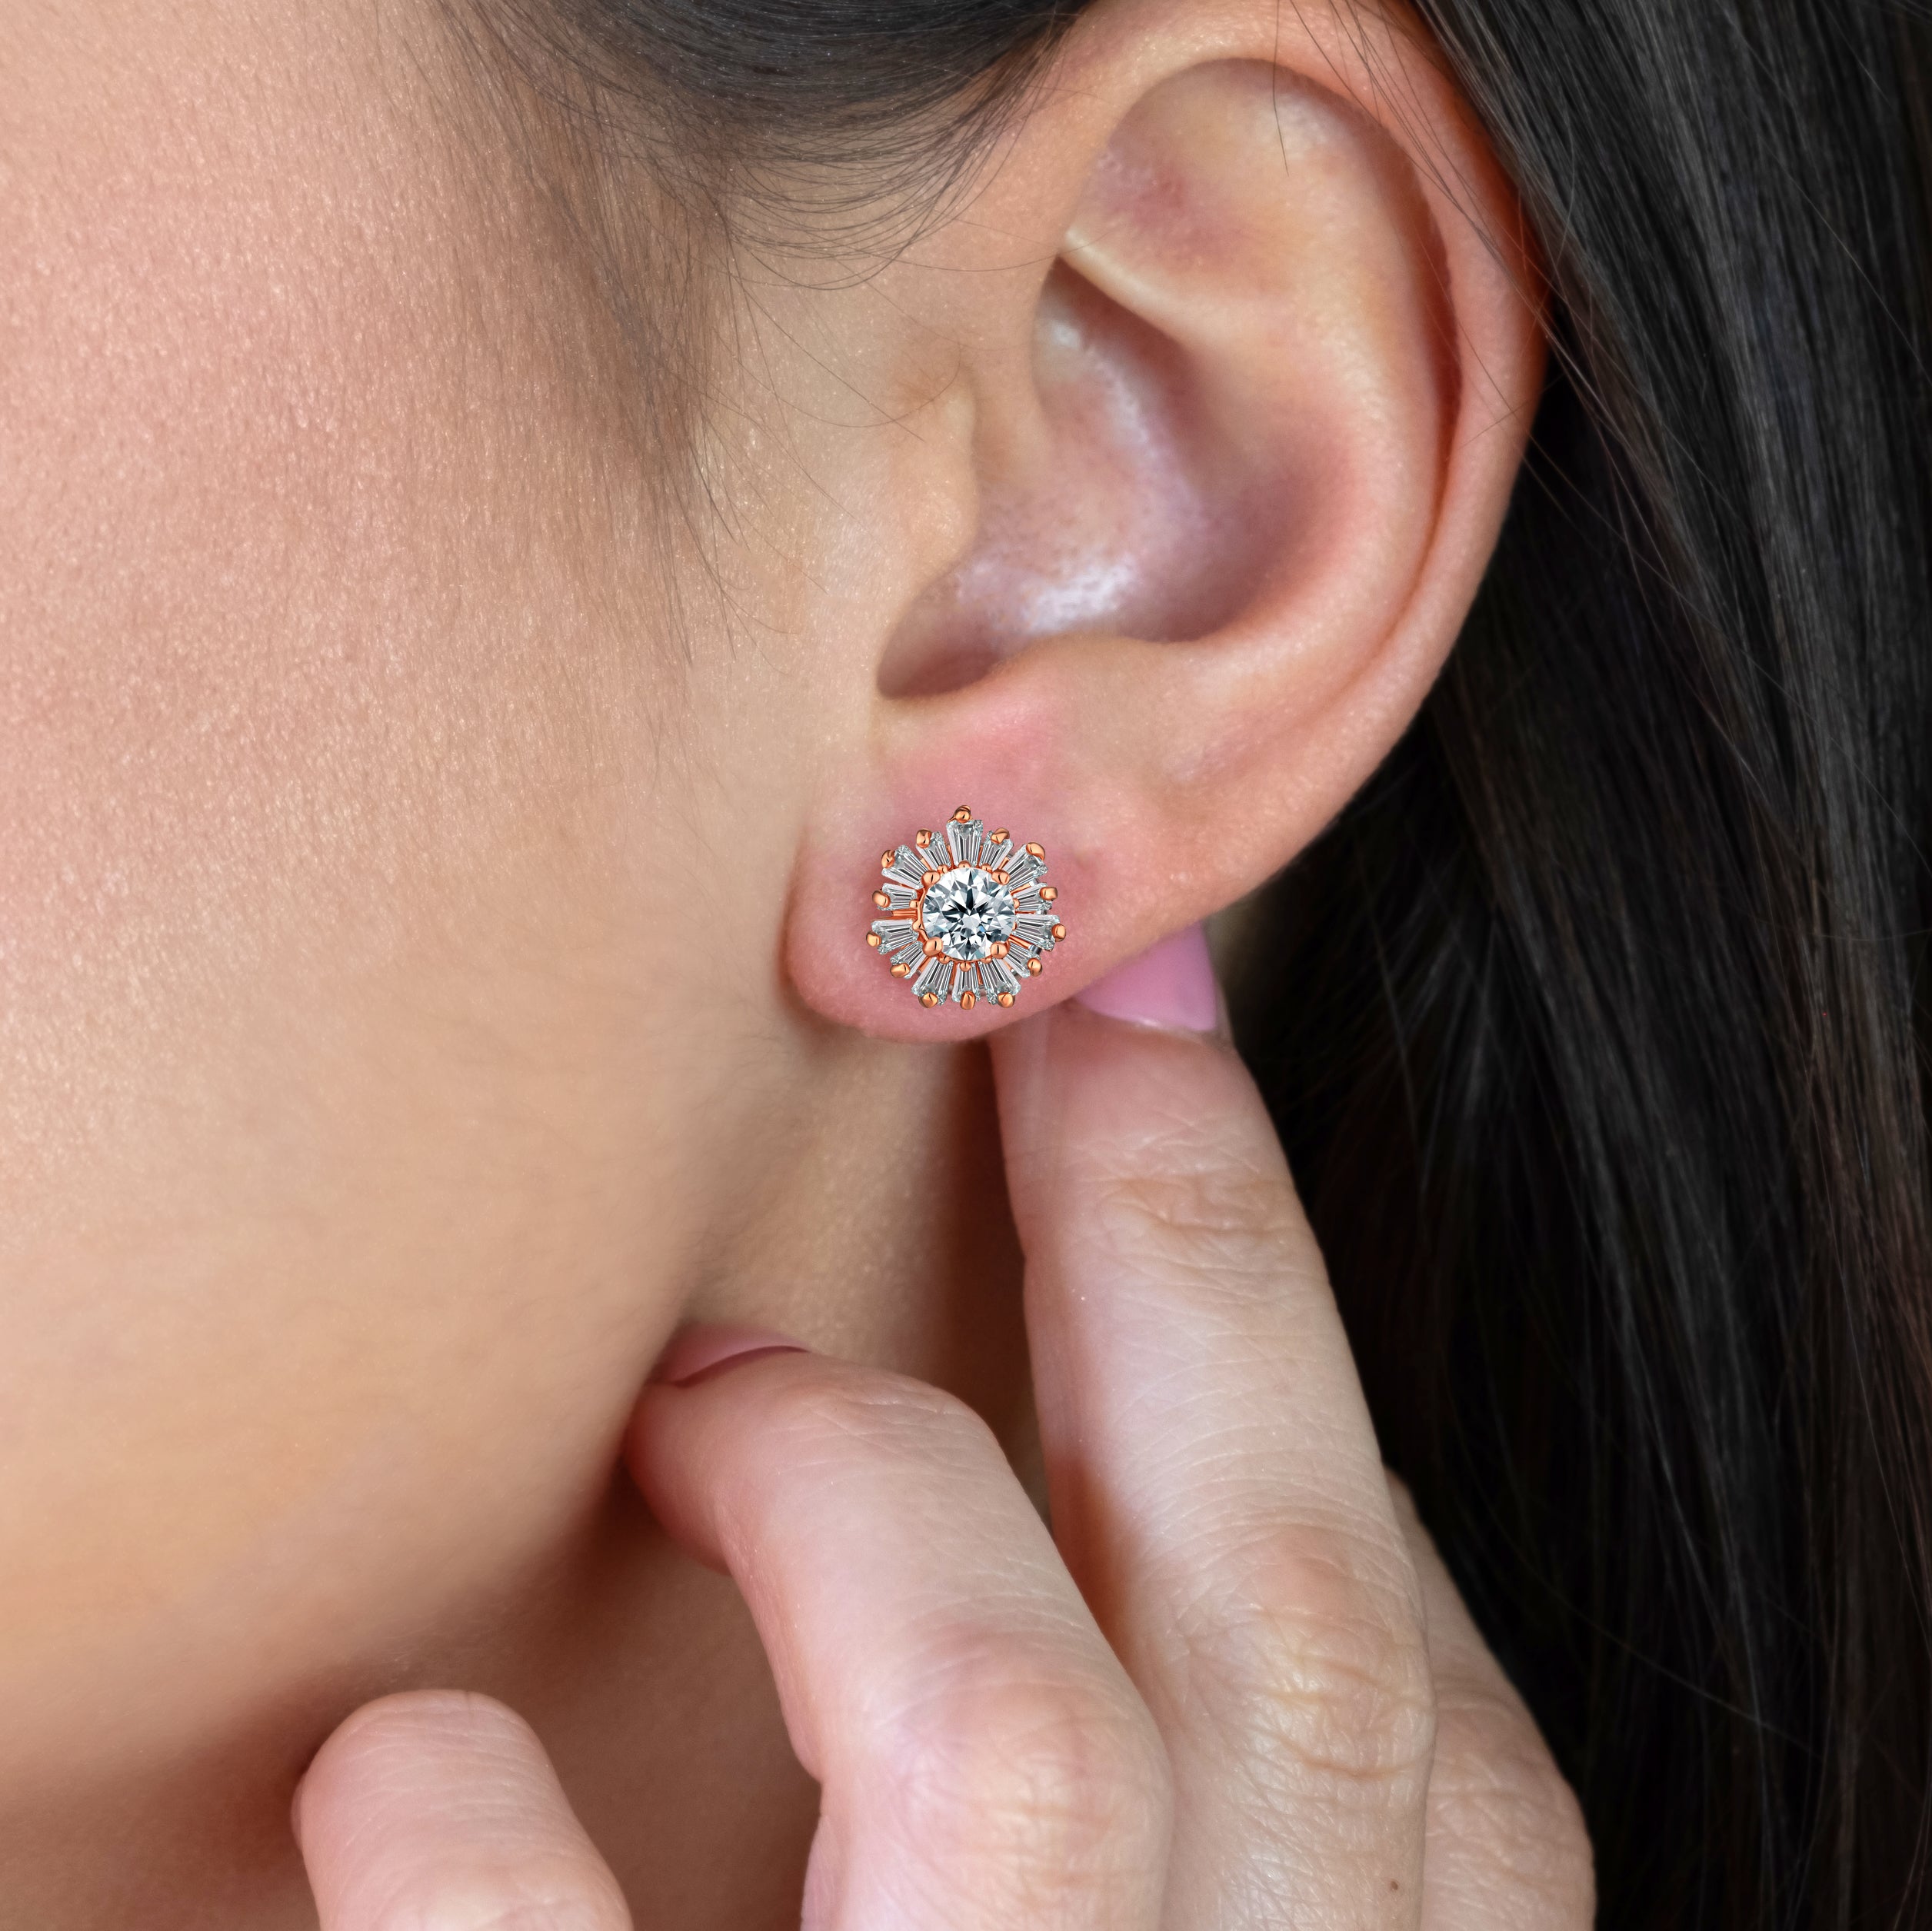 Starburst earrings in rose gold plating